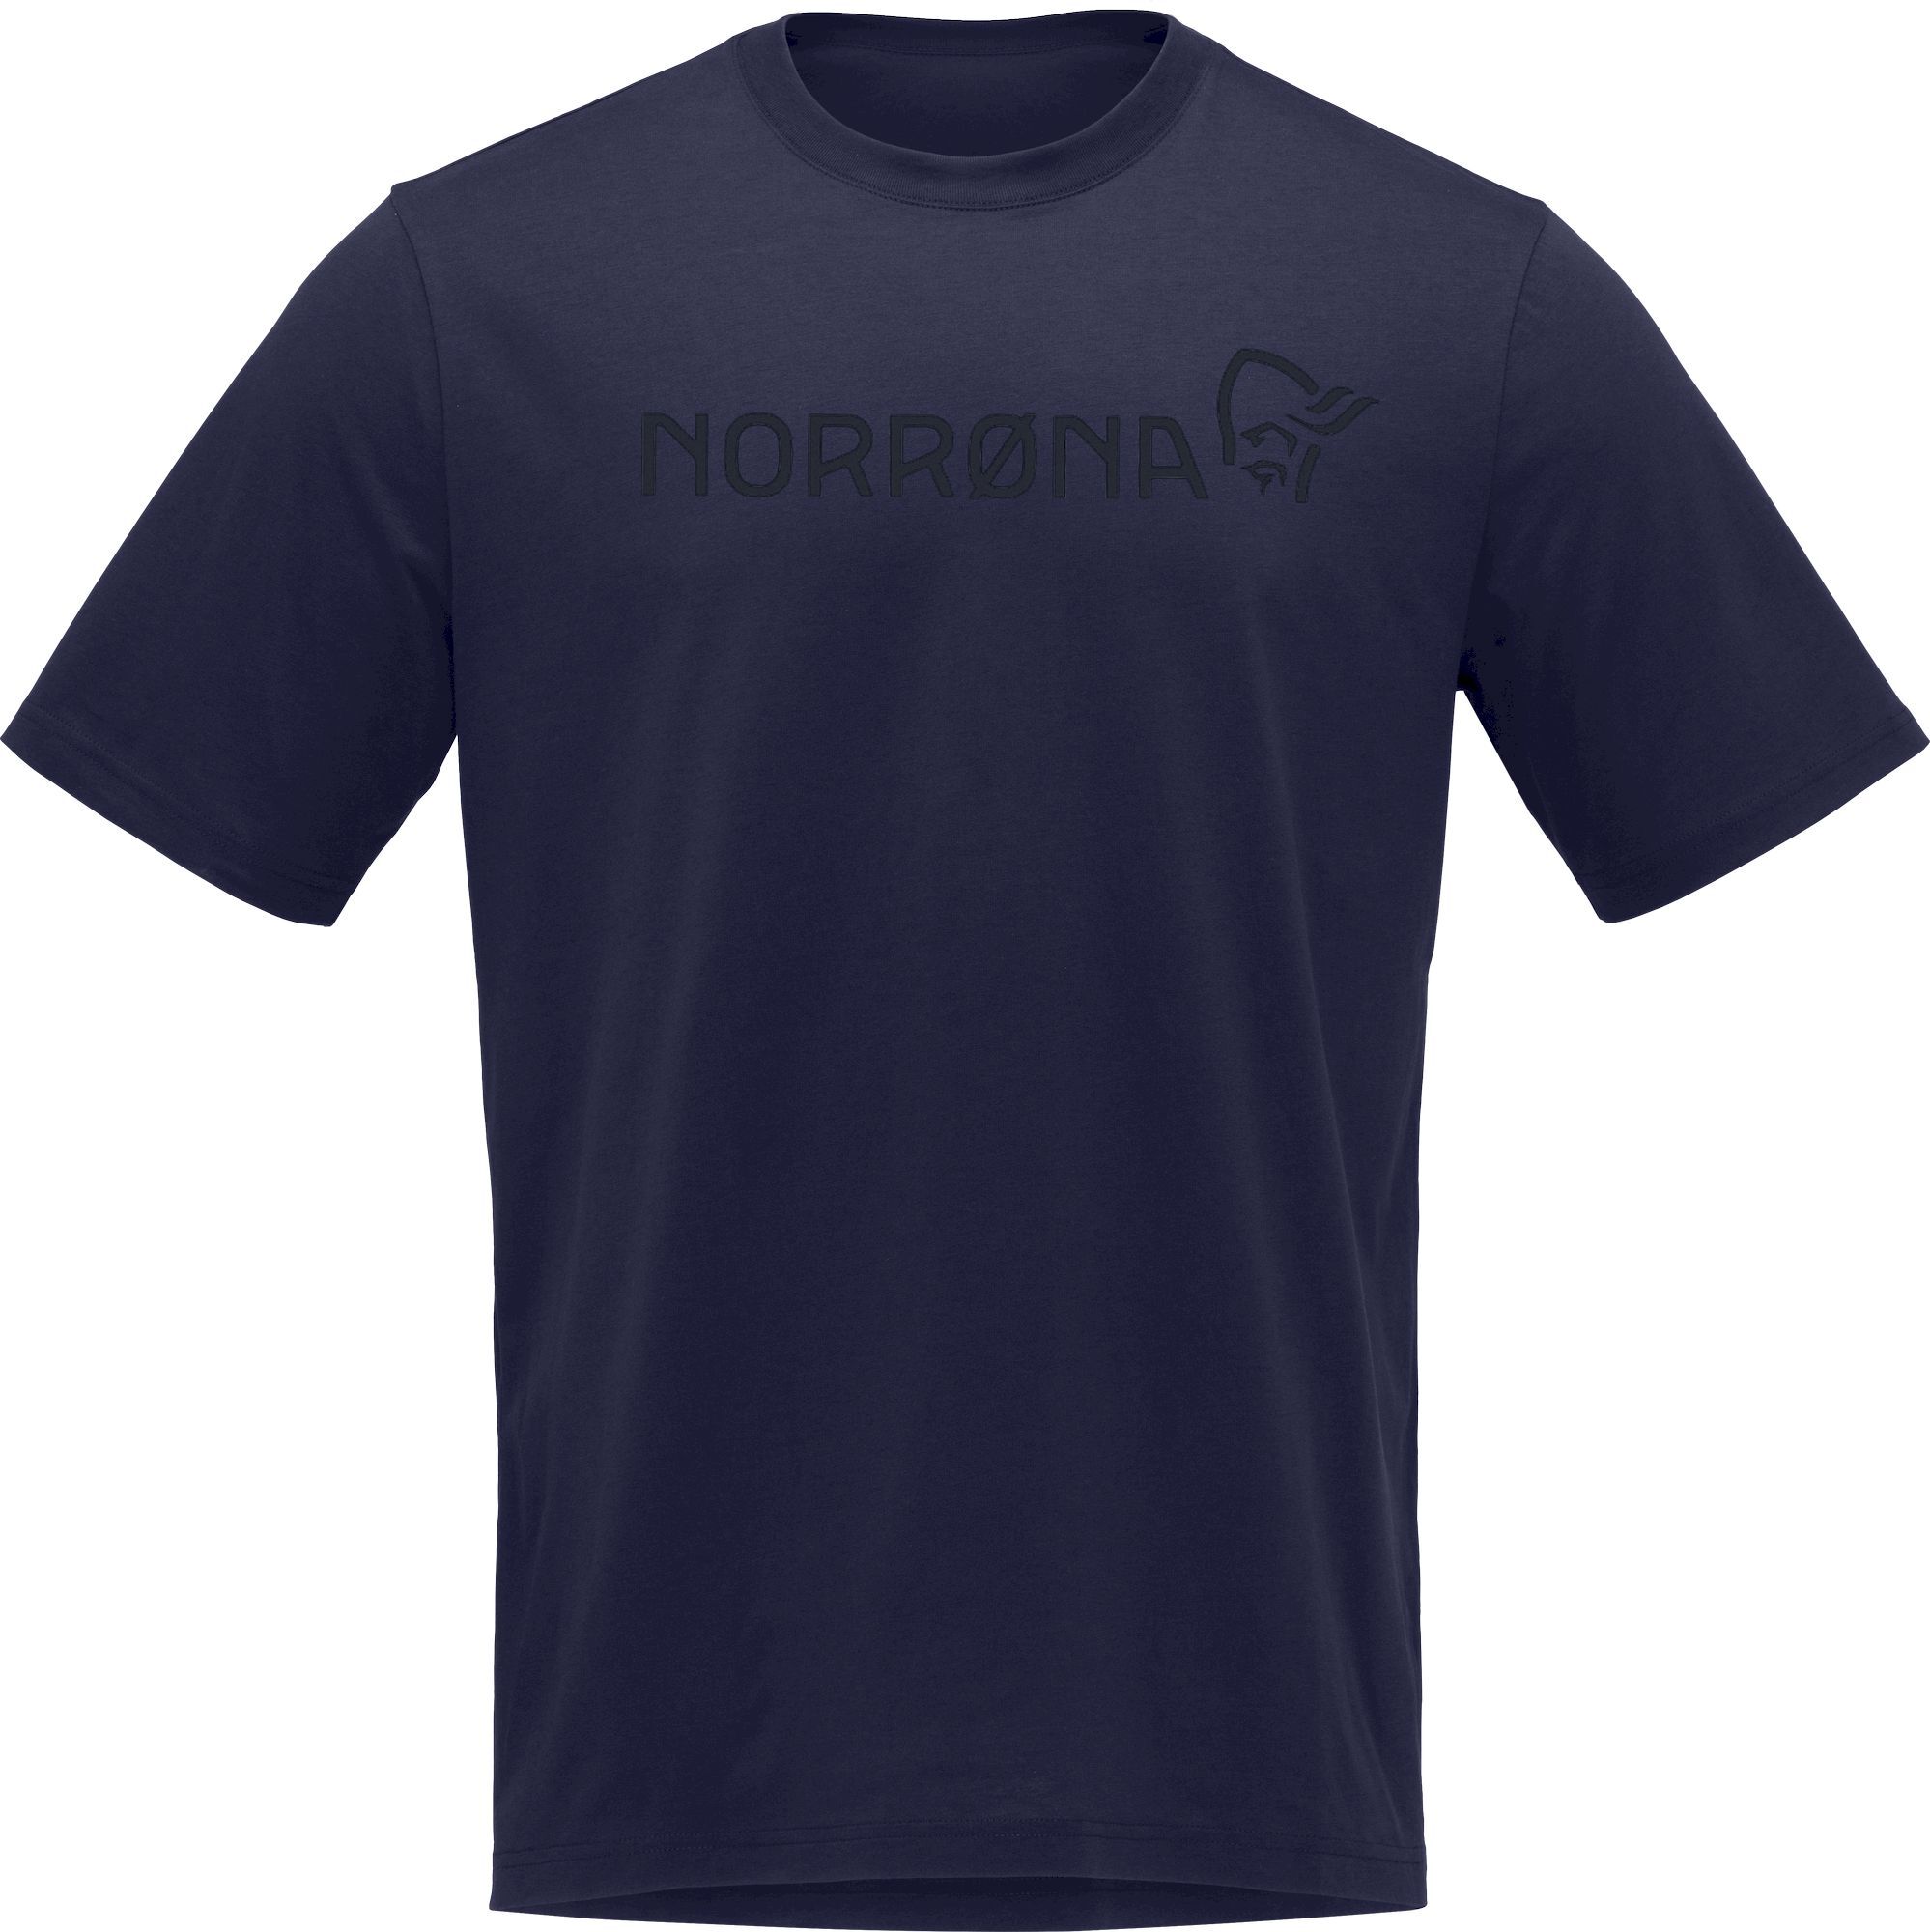 Norrona /29 Cotton Norrøna Viking - T-shirt - Men's